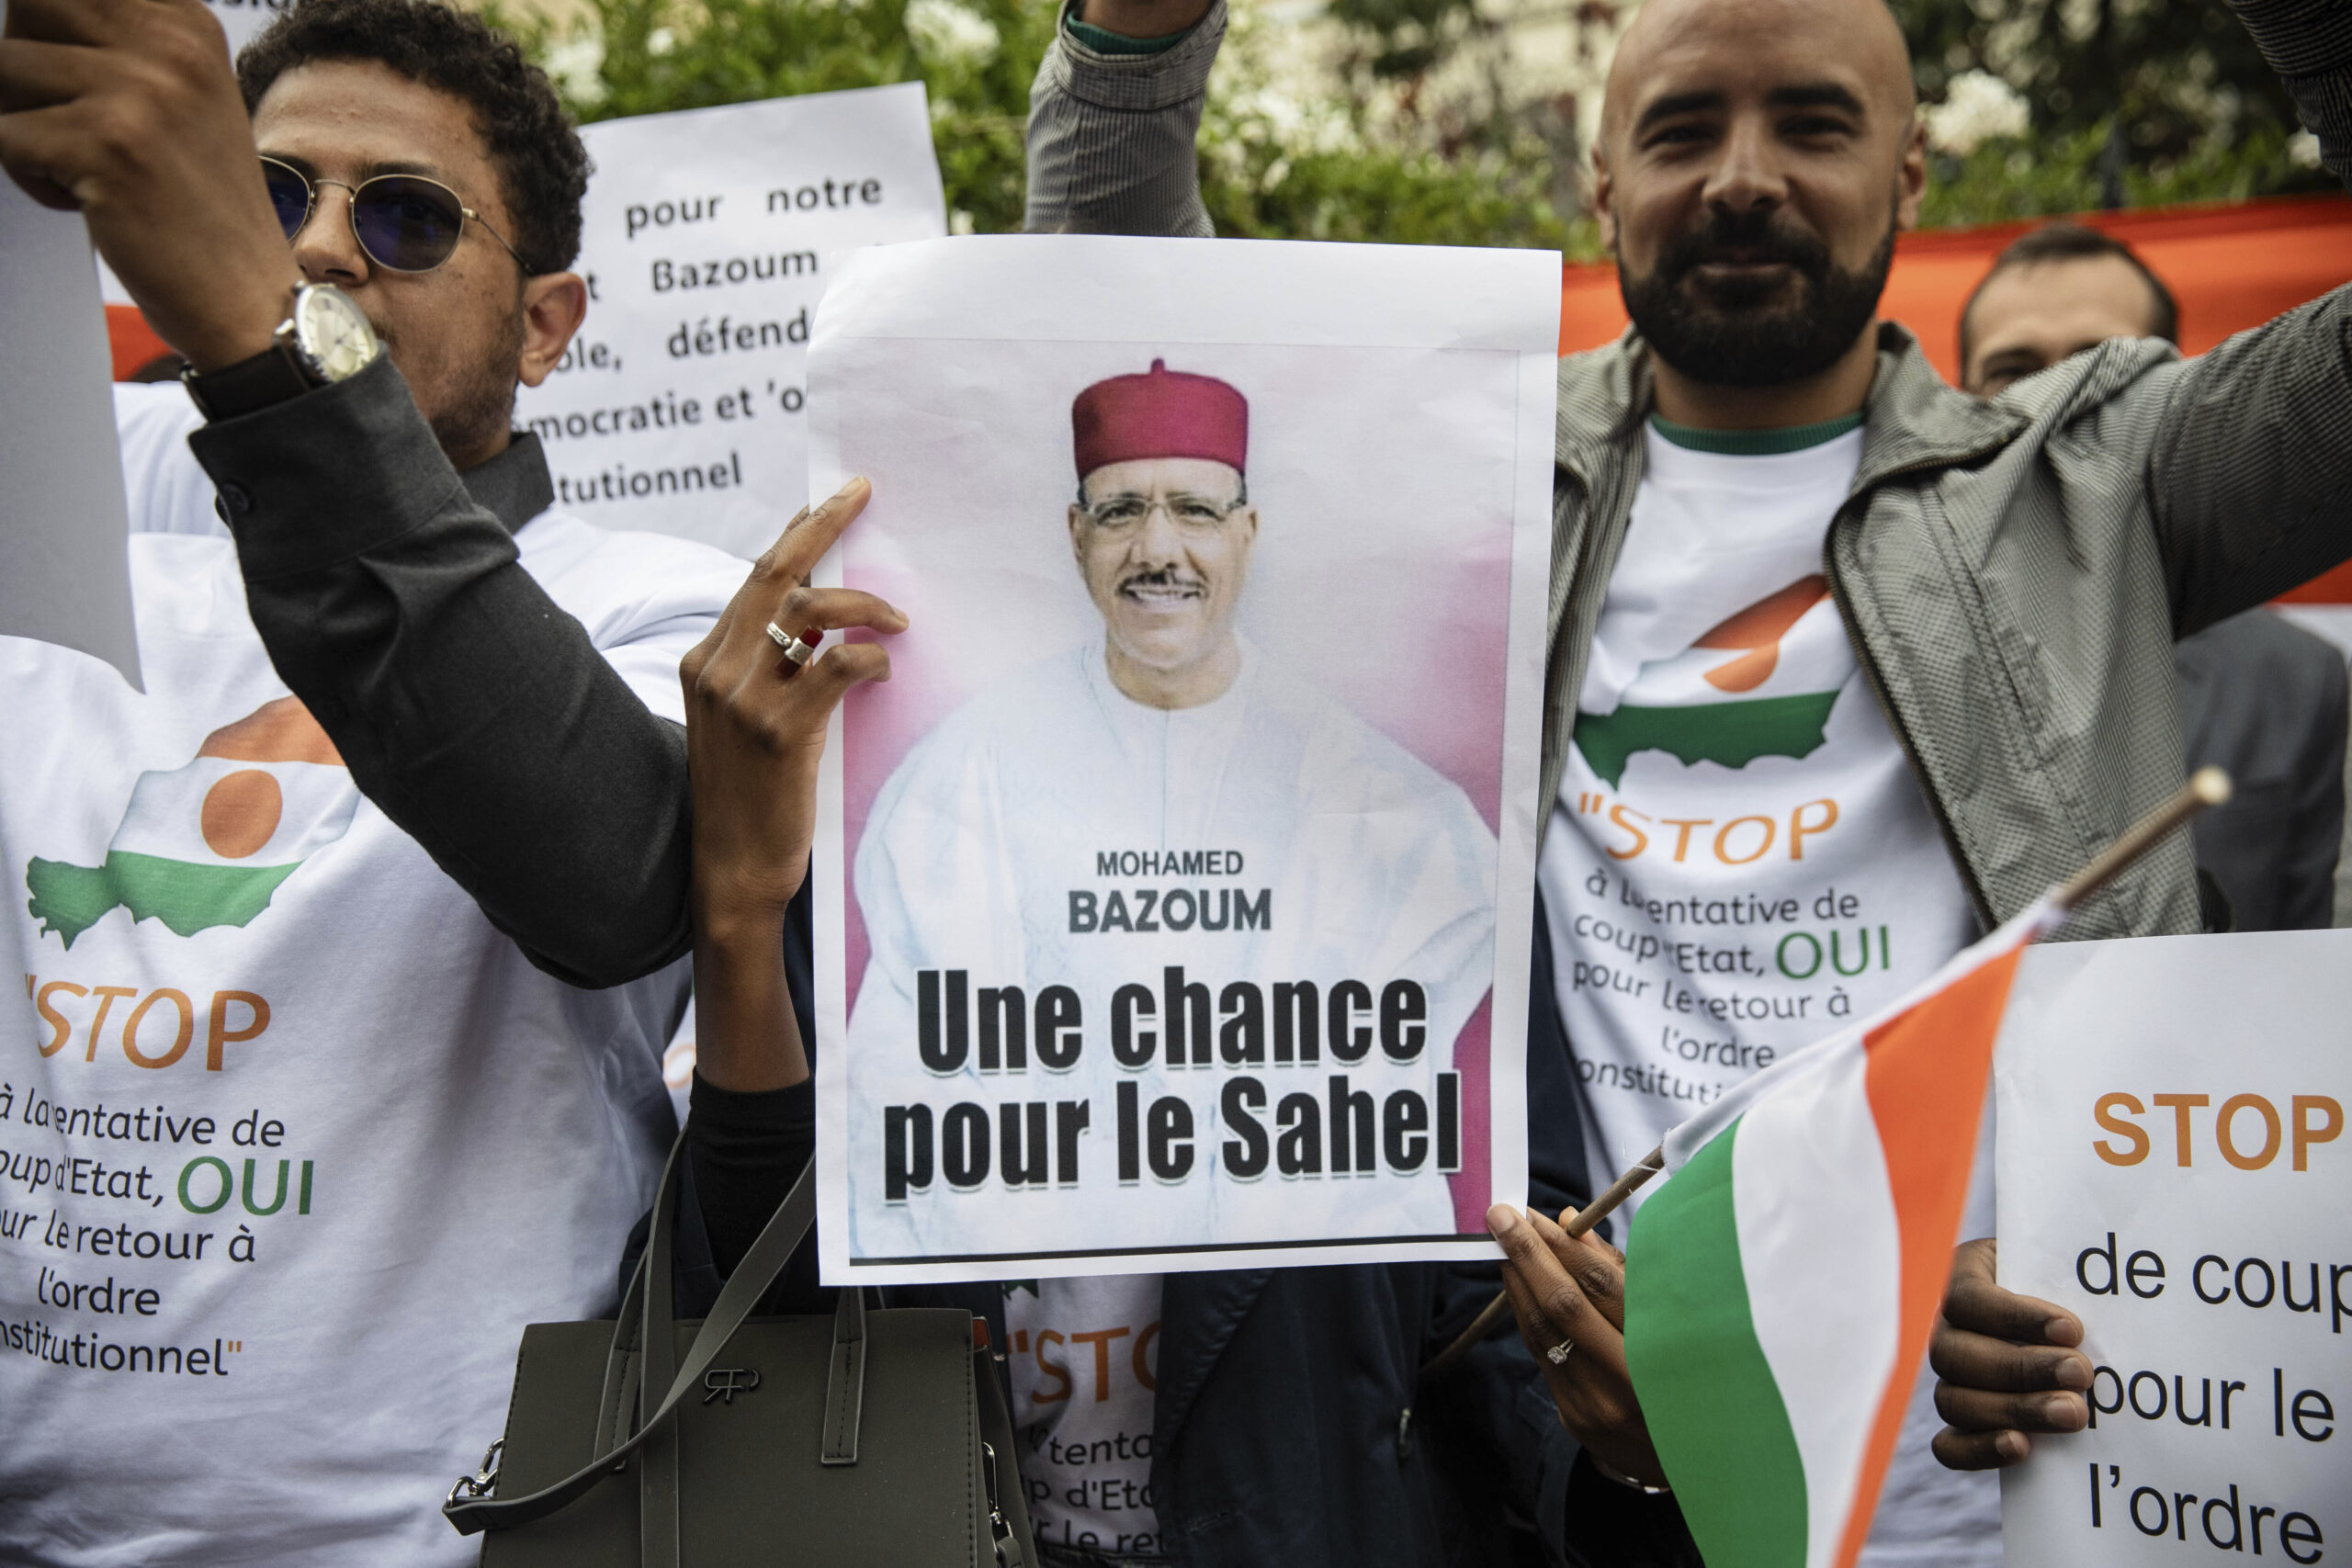 Νίγηρας: Ο ανατραπέντας πρόεδρος θα δικαστεί από το στρατιωτικό καθεστώς για «εσχάτη προδοσία»